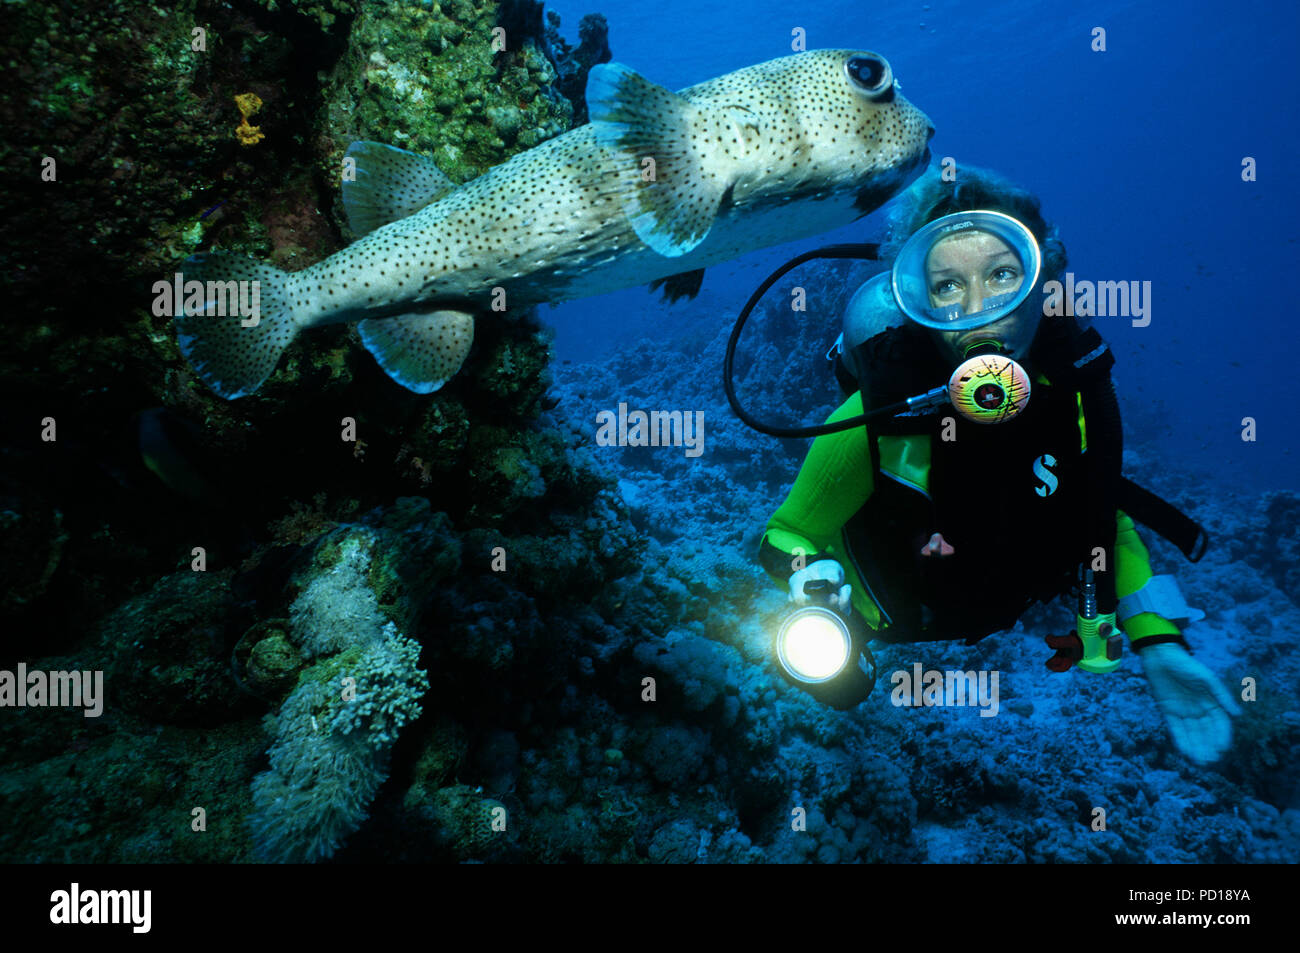 Taucher und Gepunkteter Igelfisch (Diodon hystrix), Sinai, Aegypten | Scuba diver and Black spotted porcupinefish (Diodon hystrix), Sinai, Egypt Stock Photo